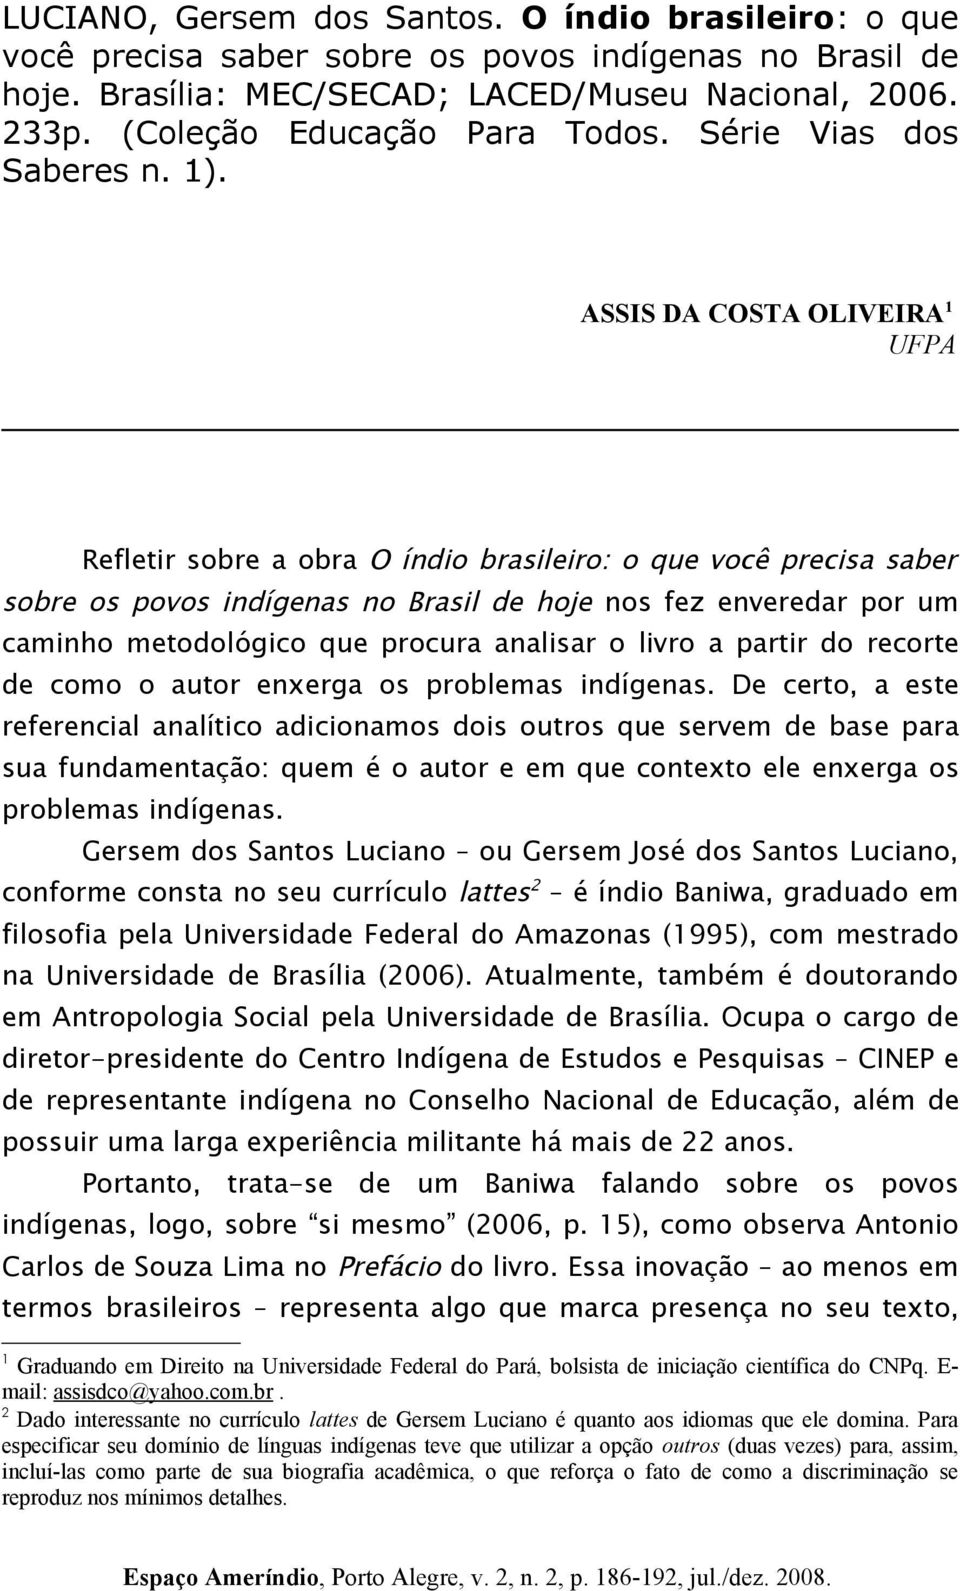 ASSIS DA COSTA OLIVEIRA 1 UFPA Refletir sobre a obra O índio brasileiro: o que você precisa saber sobre os povos indígenas no Brasil de hoje nos fez enveredar por um caminho metodológico que procura